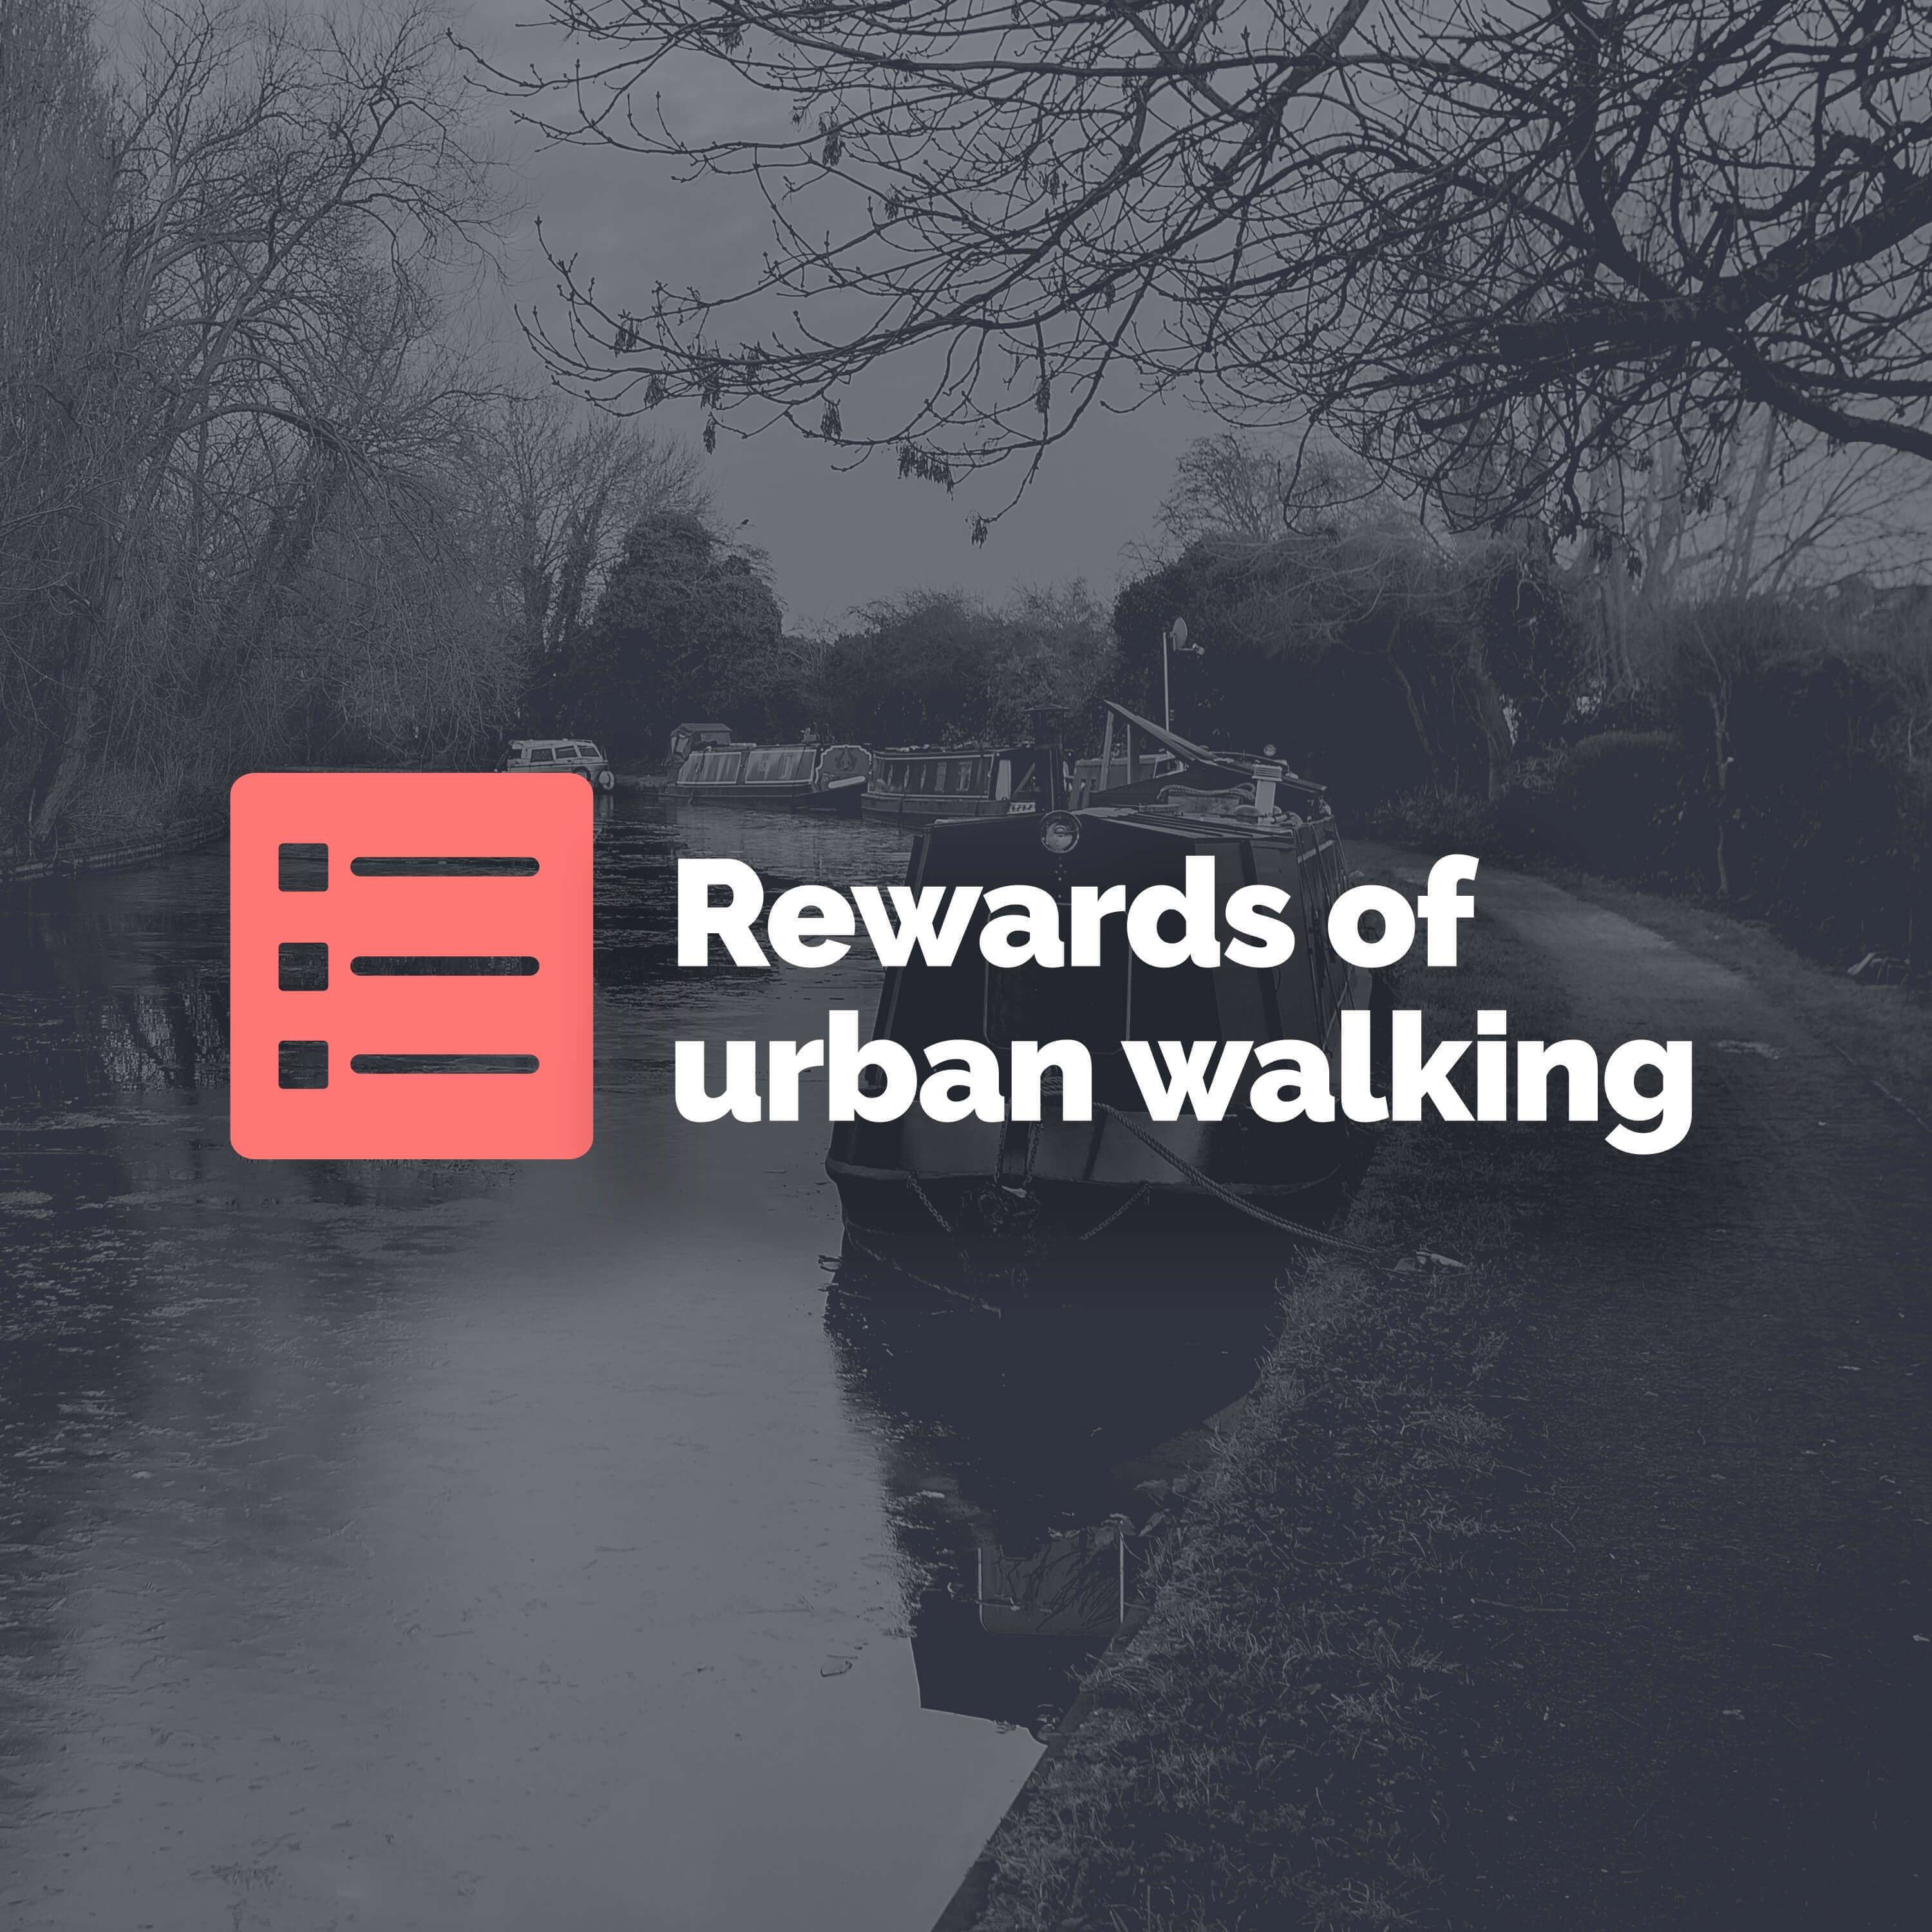 Top 5 rewards of urban walking